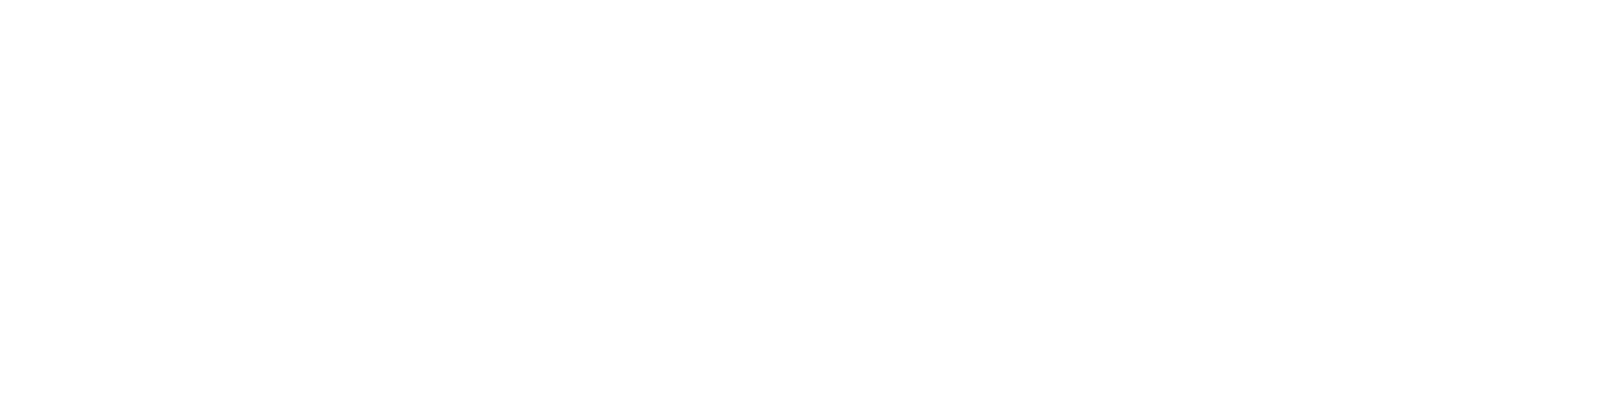 대한민국 대표 앱 스토어 - 대한민국 이동통신 3사(SK텔레콤, KT, LG U+)와 네이버가 함께 만들었습니다. 안드로이드 기반의 휴대폰과 태블릿에서 만날 수 있습니다.